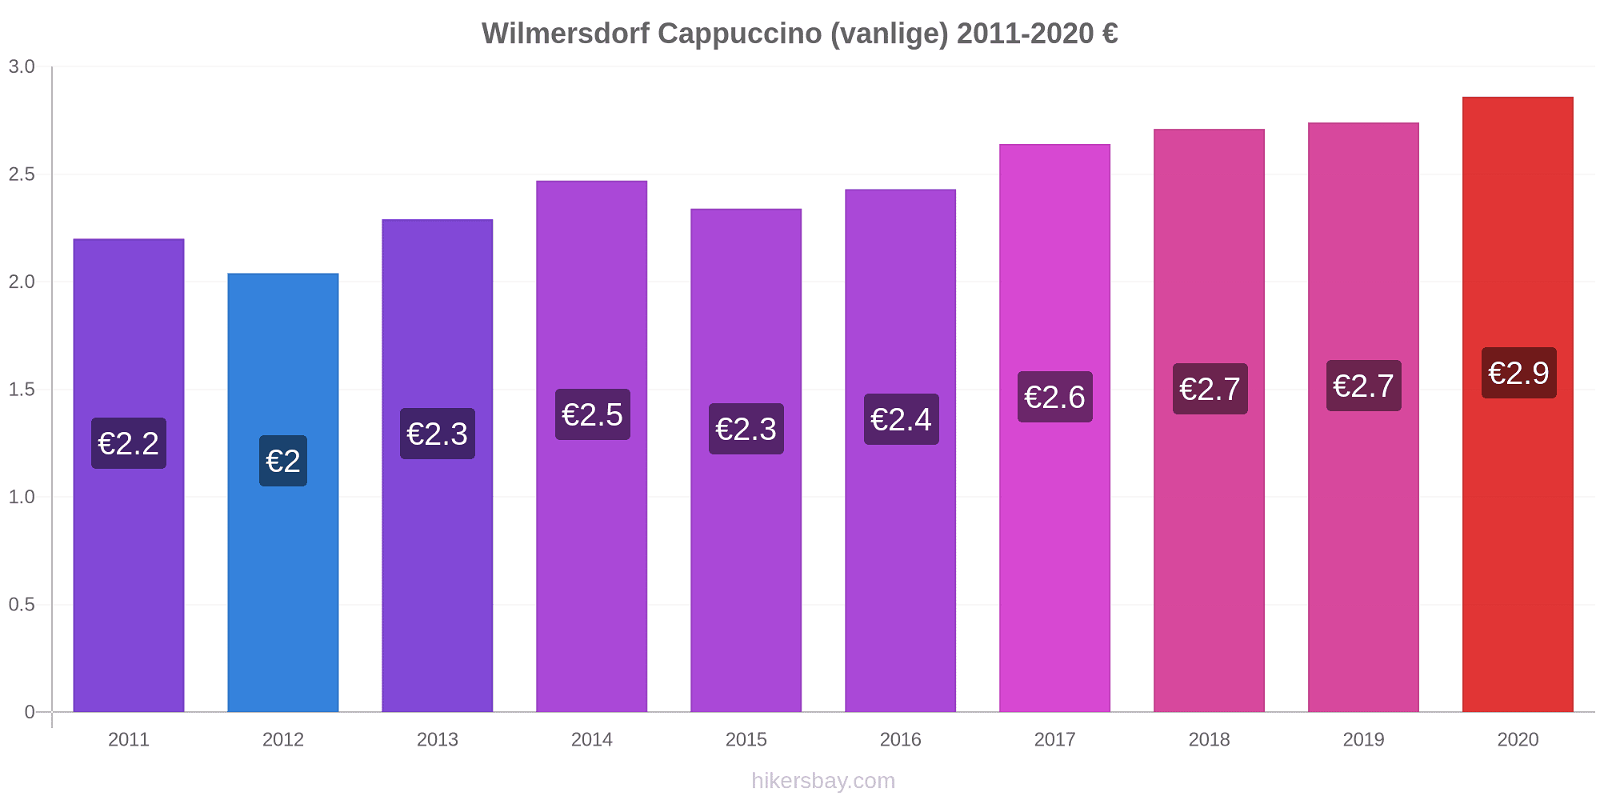 Wilmersdorf prisendringer Cappuccino (vanlige) hikersbay.com